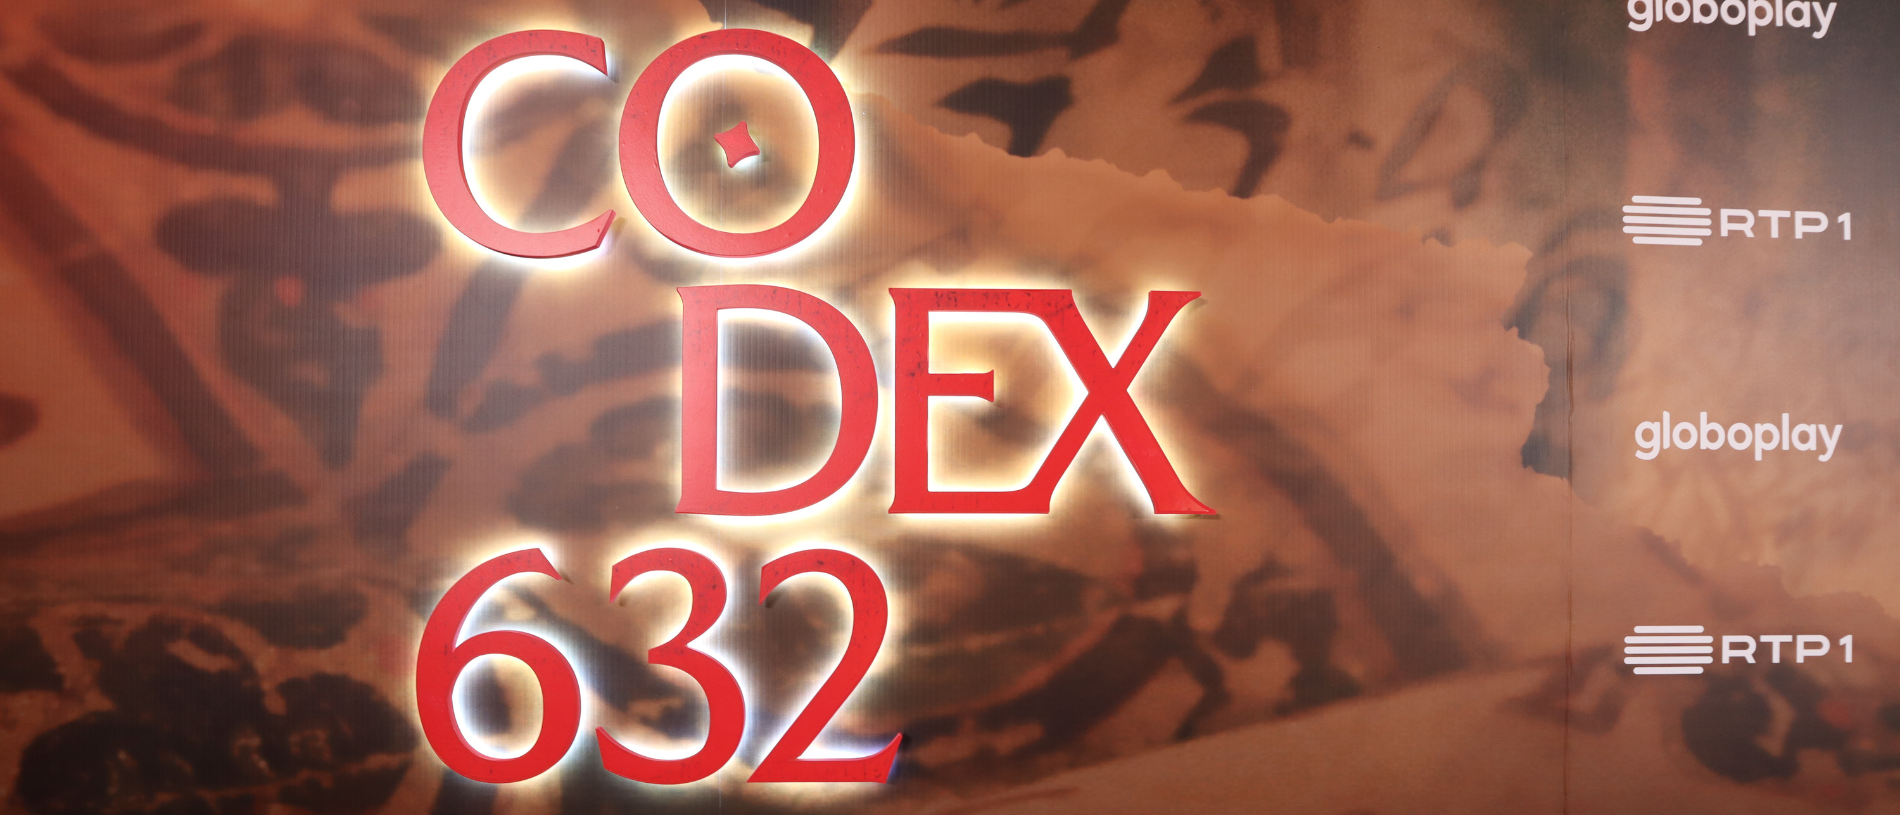 You are currently viewing Do livro ao ecrã: “Codex 632” traz à televisão mistério do passado e questões do presente